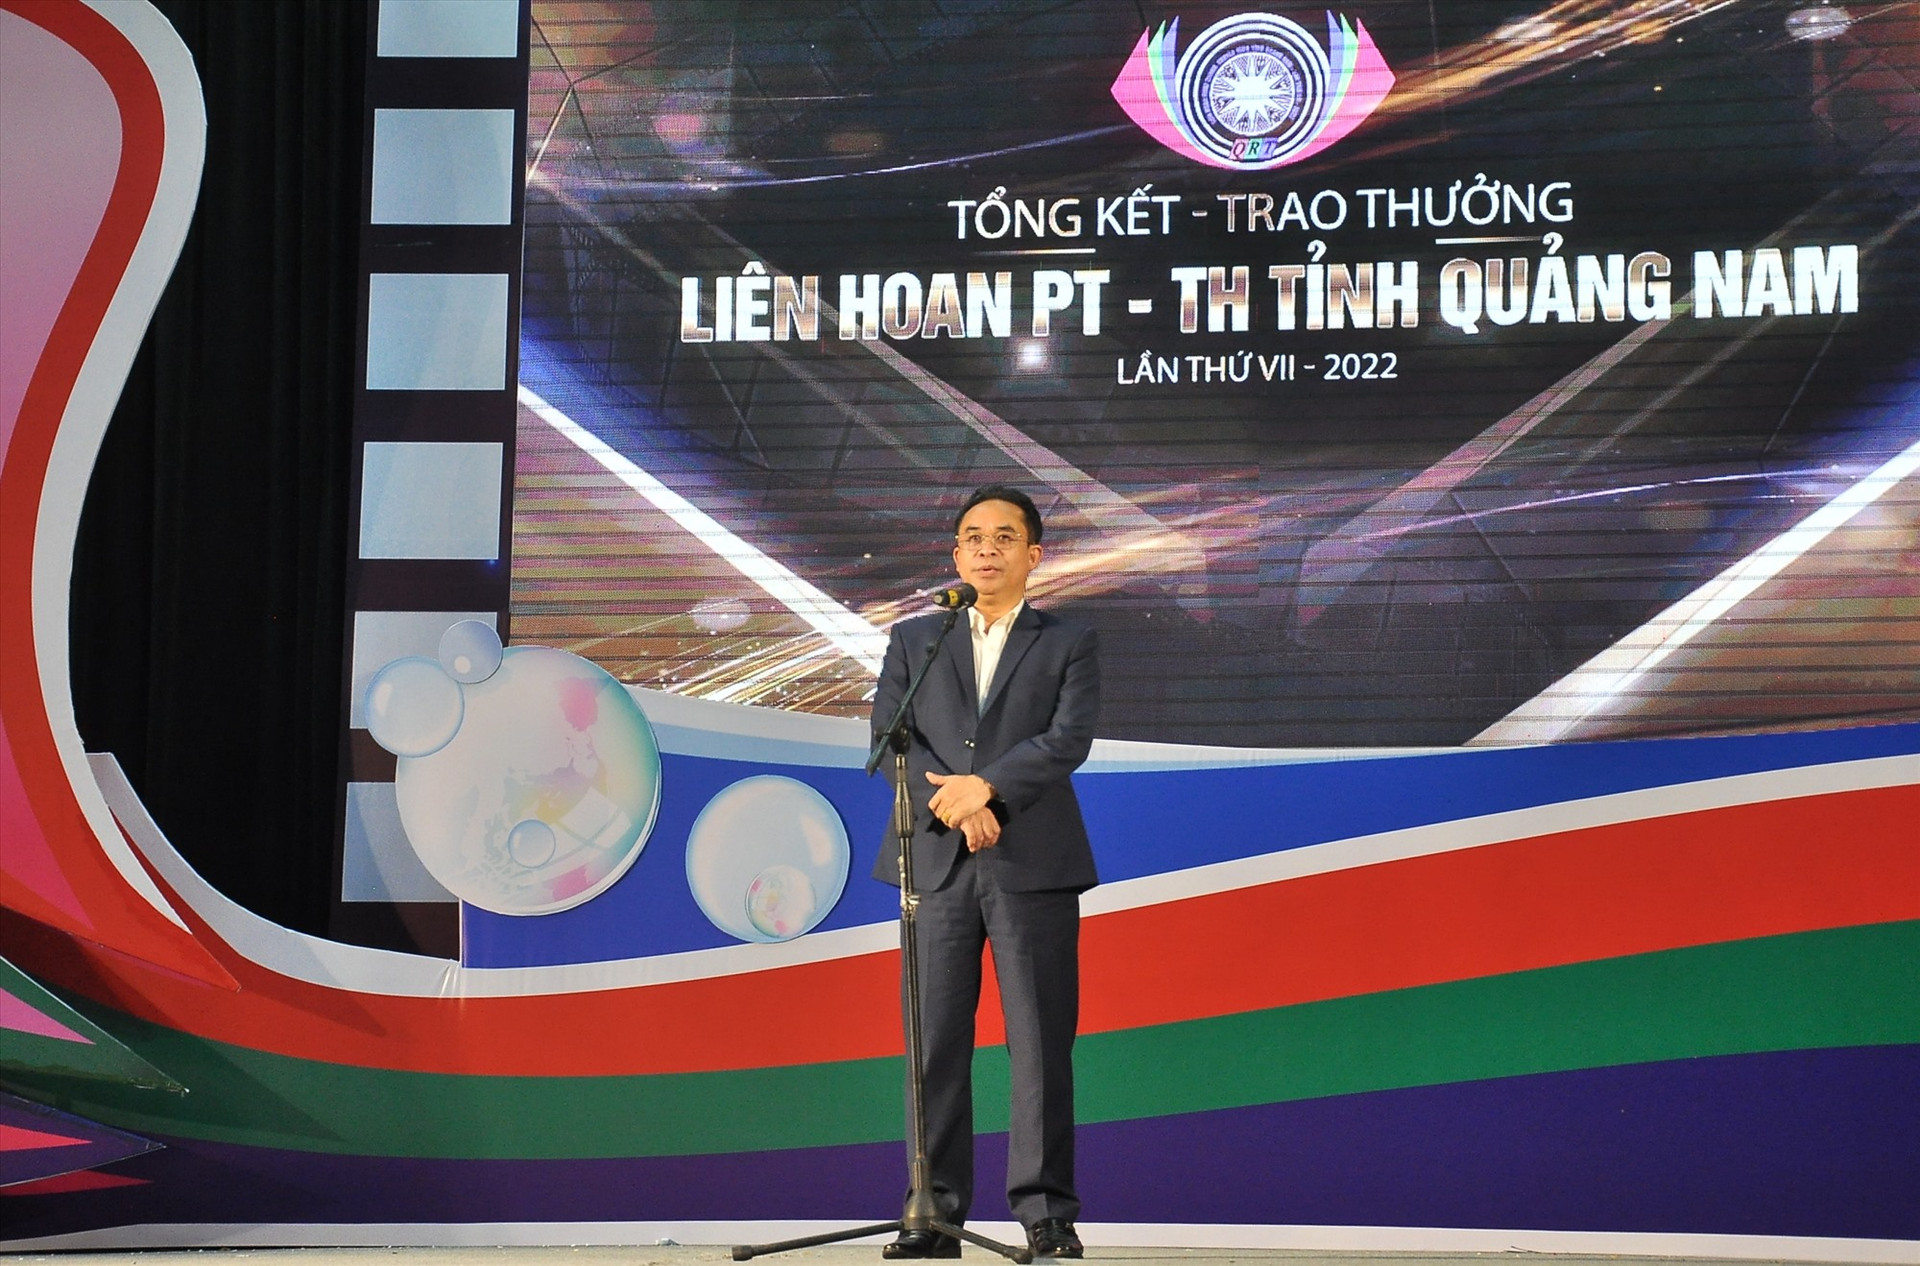 Phó Chủ tịch UBND tỉnh Trần Anh Tuấn phát biểu tại Liên hoan PT-TH tỉnh Quảng Nam lần thứ VII (năm 2022). Ảnh: VINH ANH